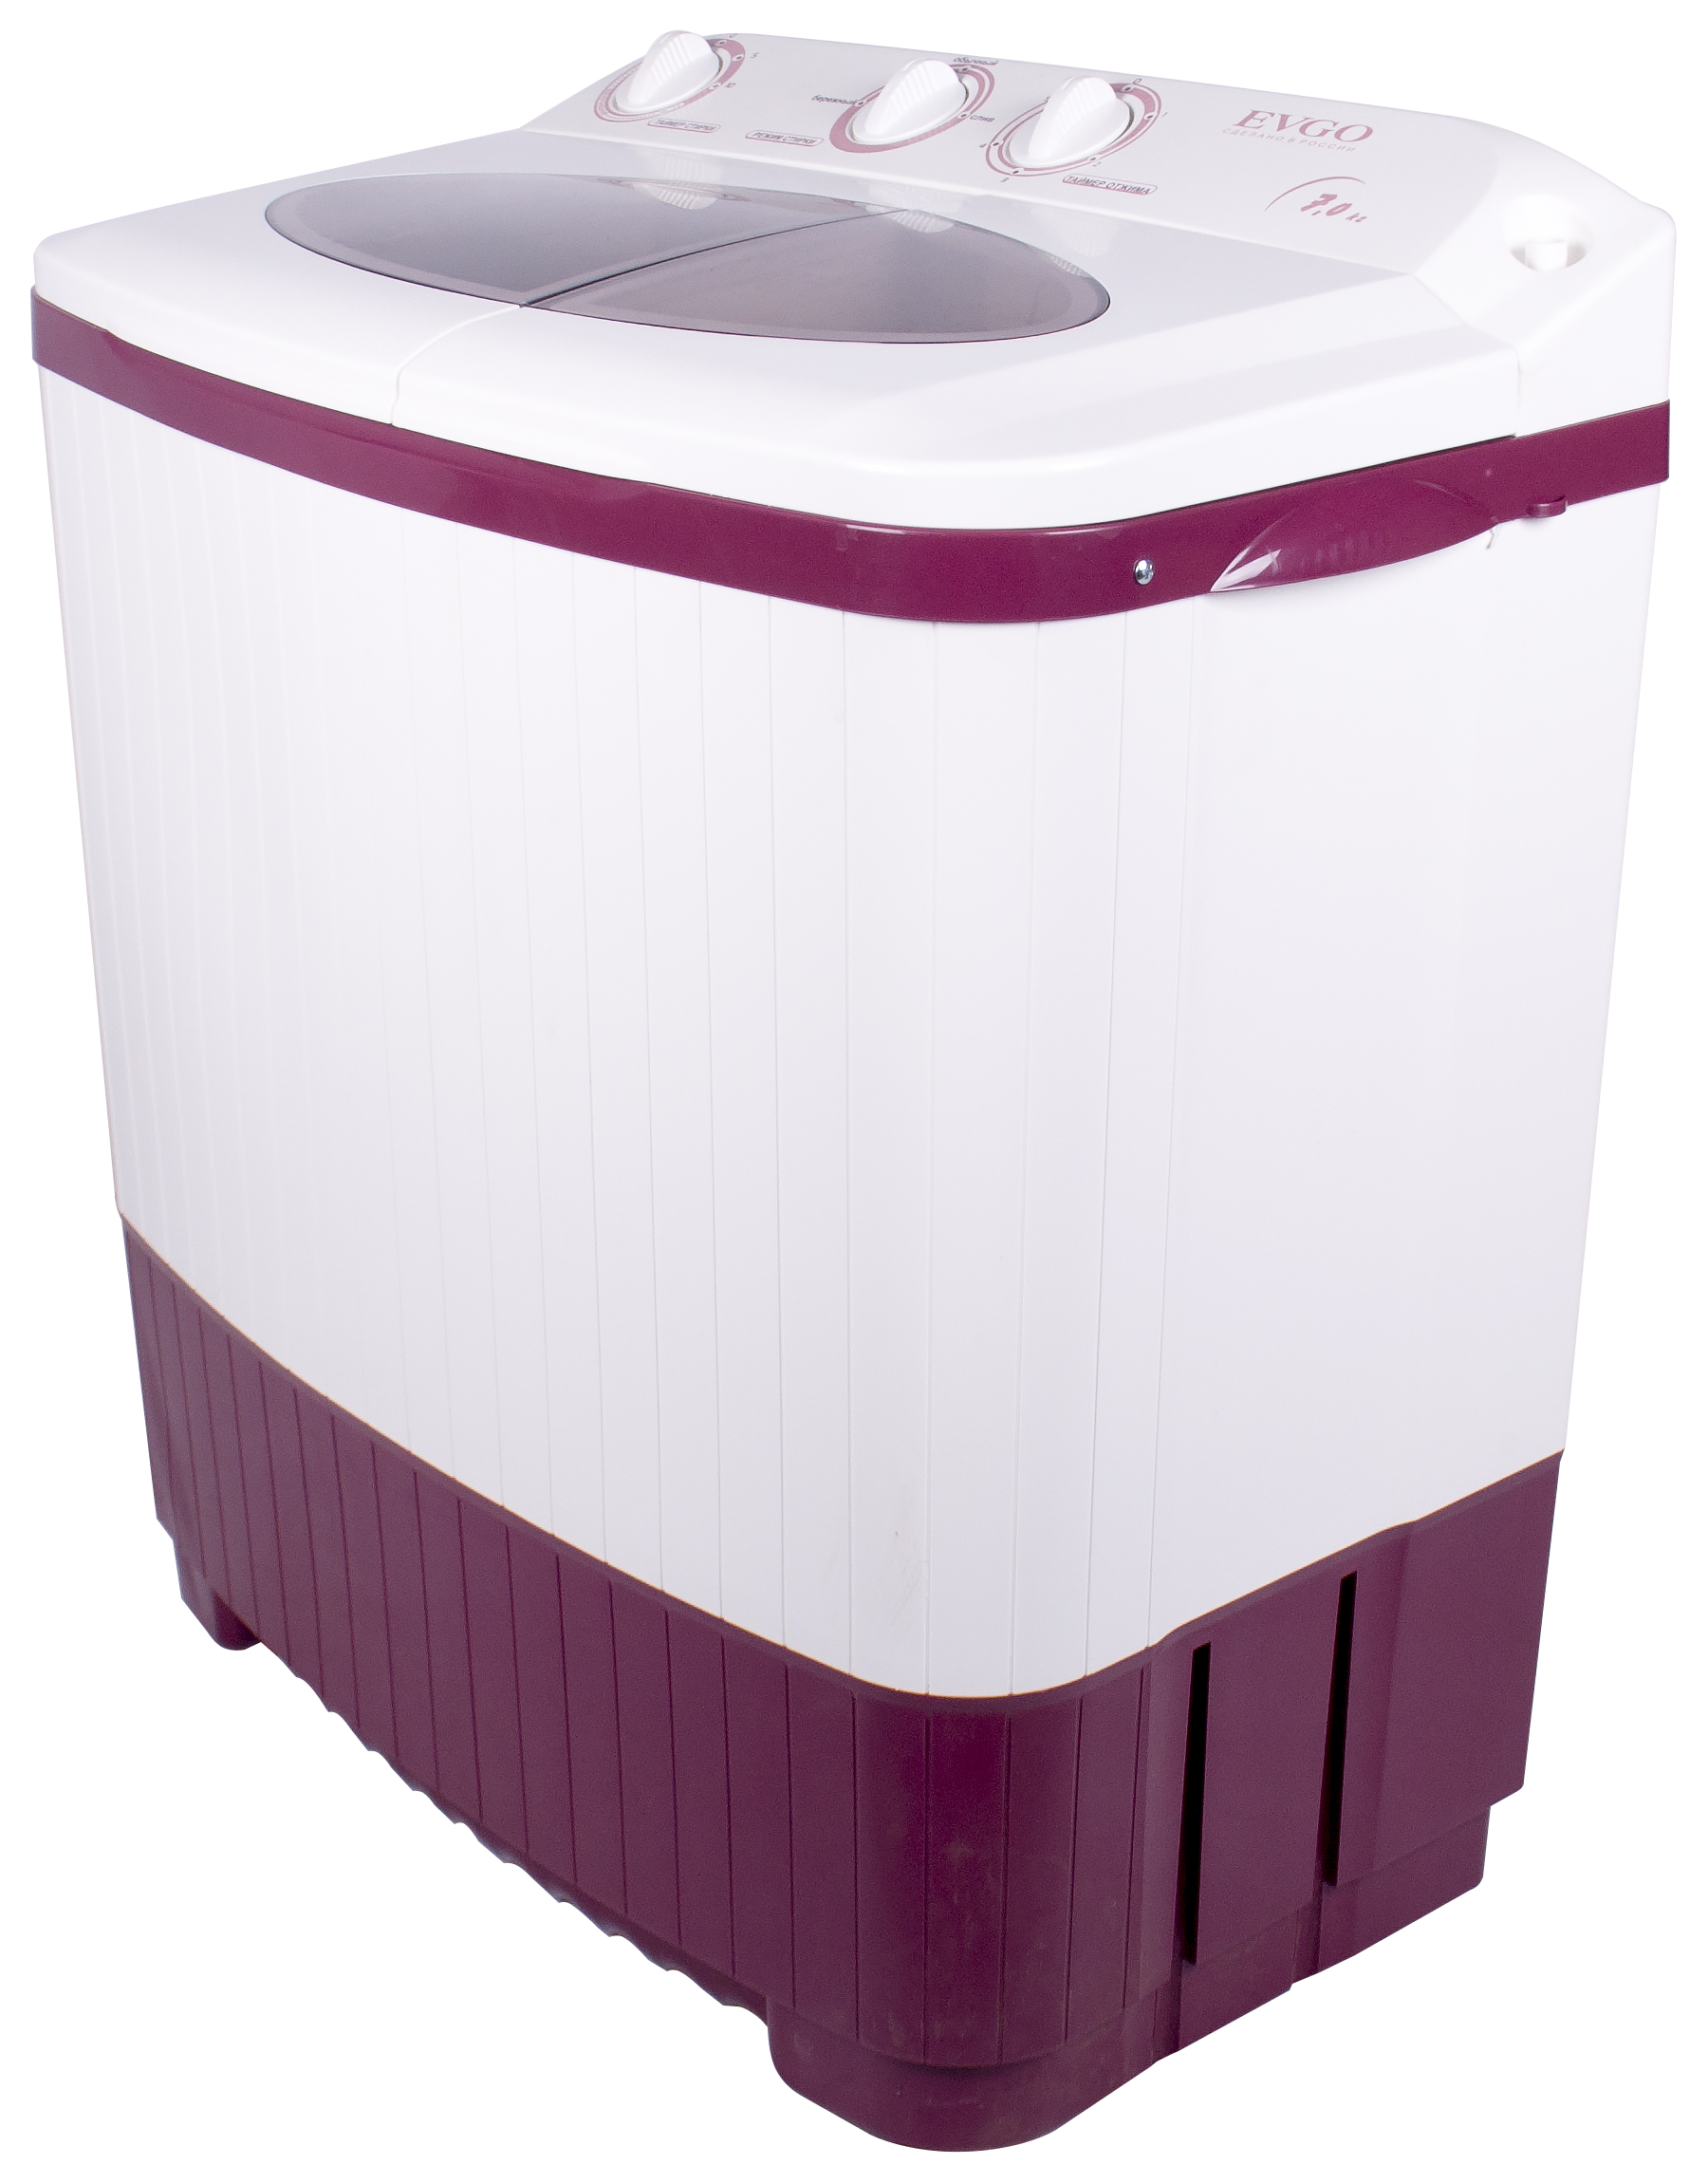 Активаторная стиральная машина Evgo WS-70PET белый стиральная машина славда ws 70pет 1350 об мин класс а 5 5 кг бело серая